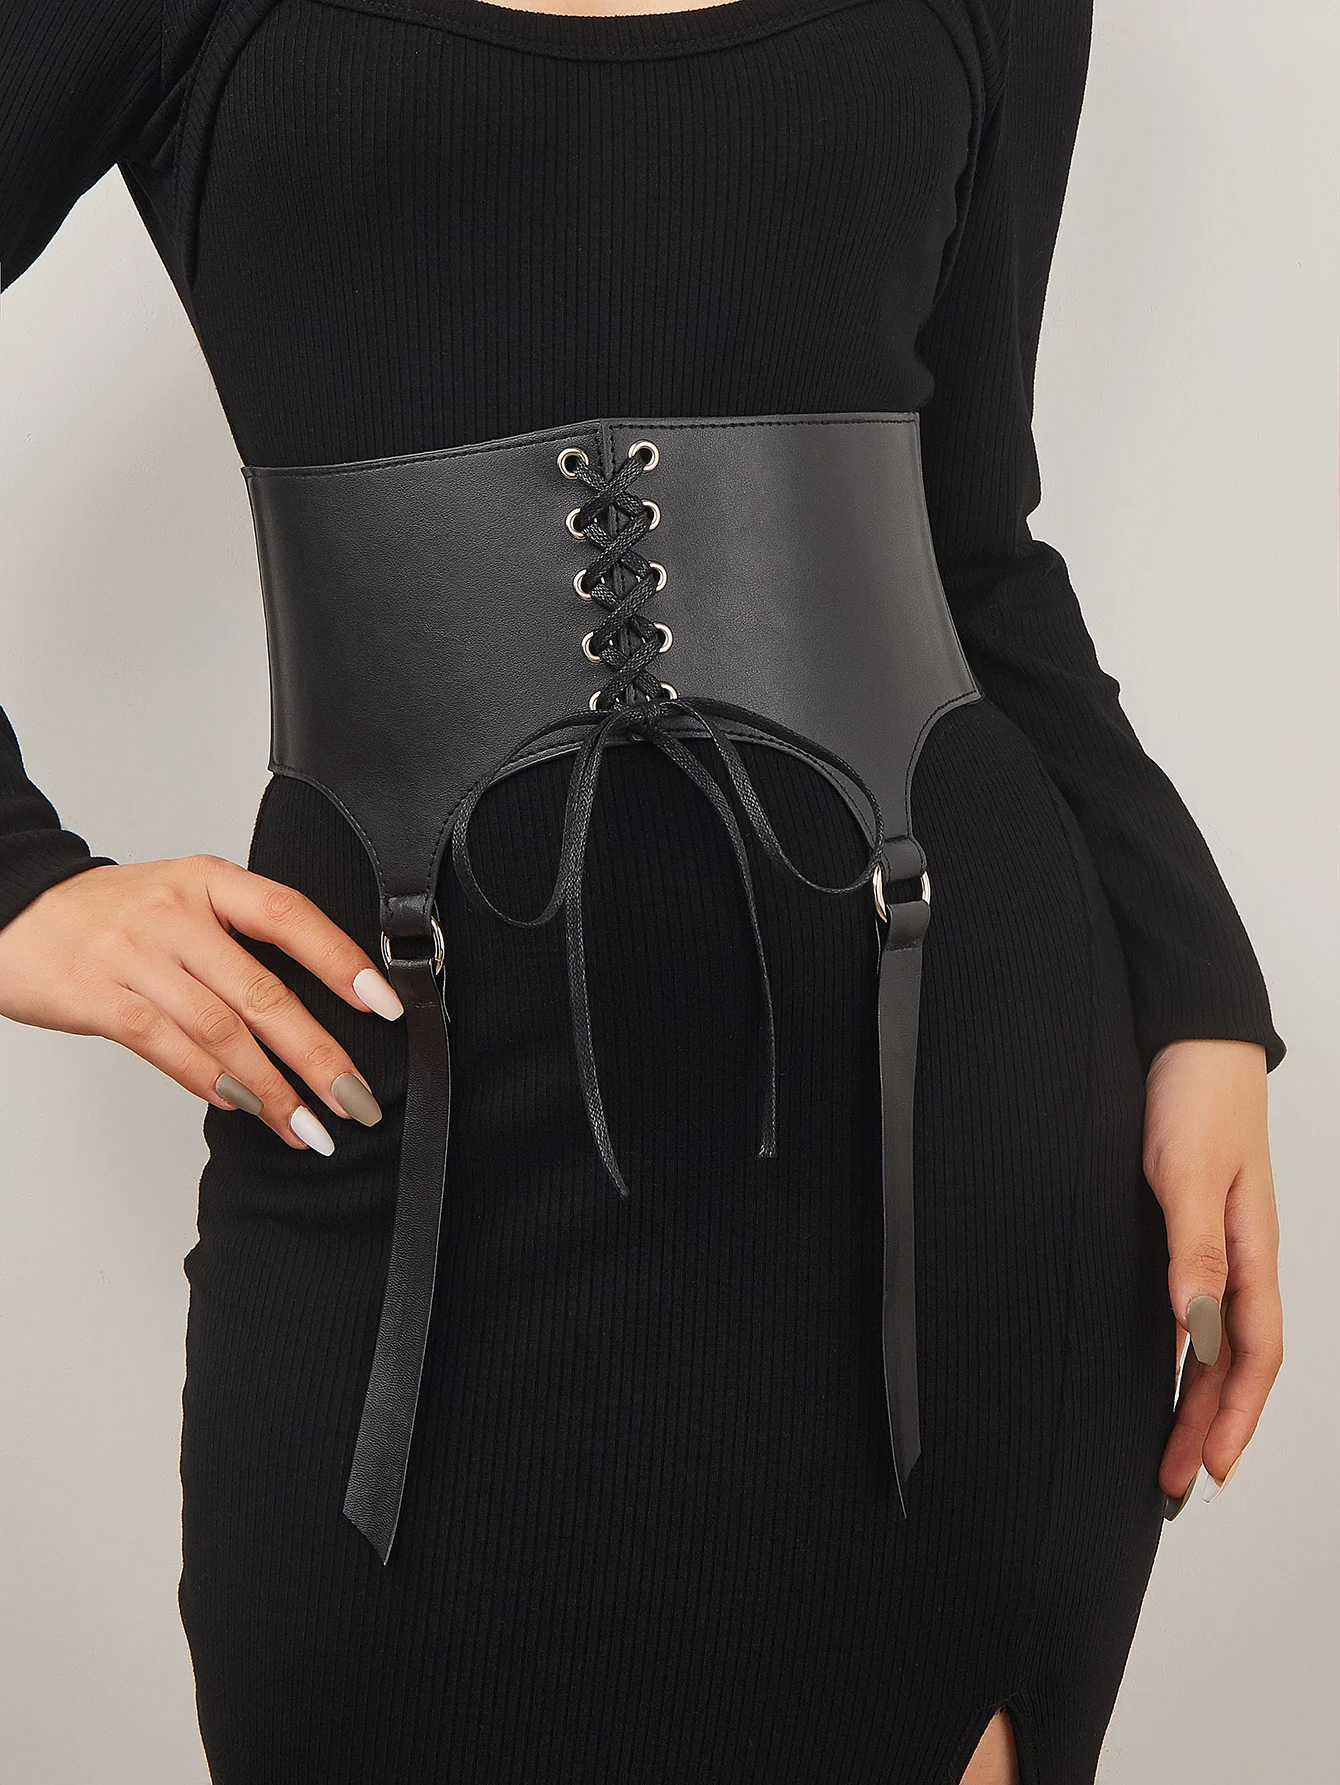 Lace up girdle Women underbust belts For Lady Black Dourbesty Vintage cummerbund corset Sex Vest Waist Comeondear gothic harness